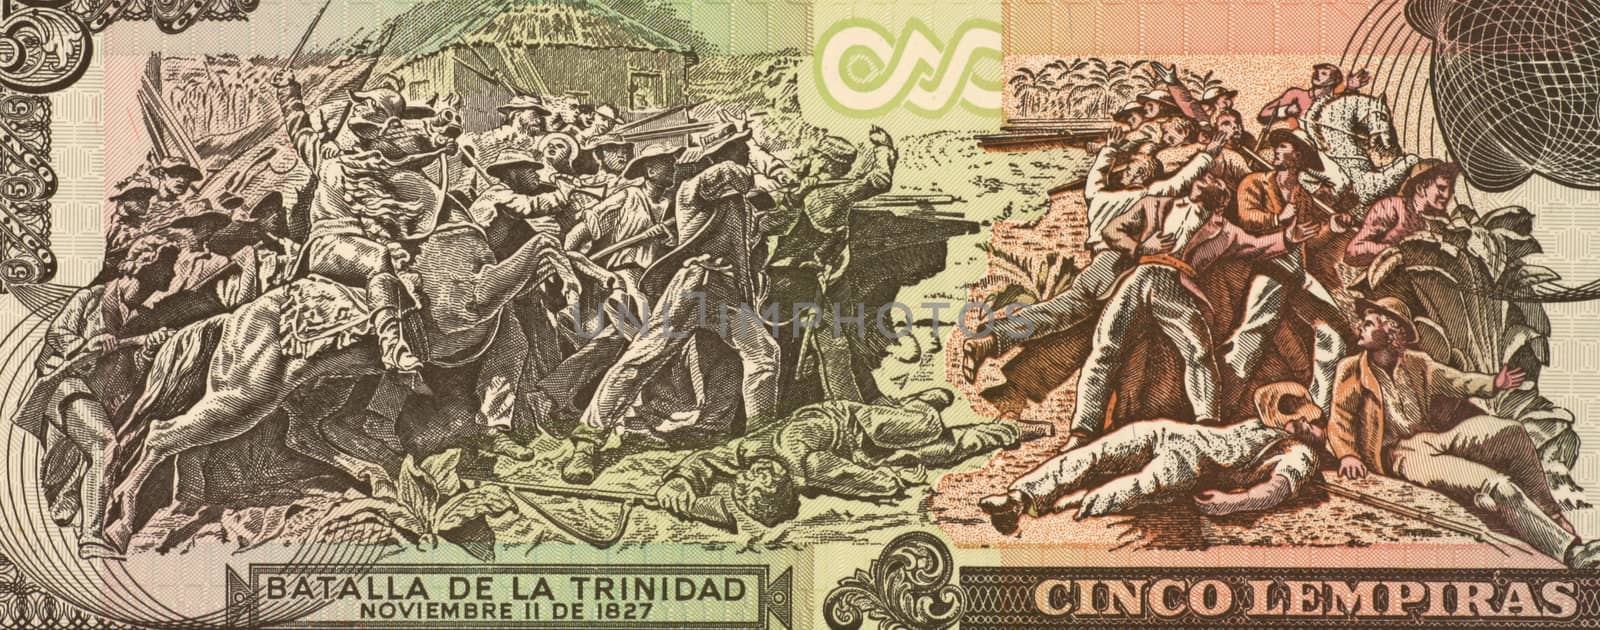 Battle of La Trinidad by Georgios